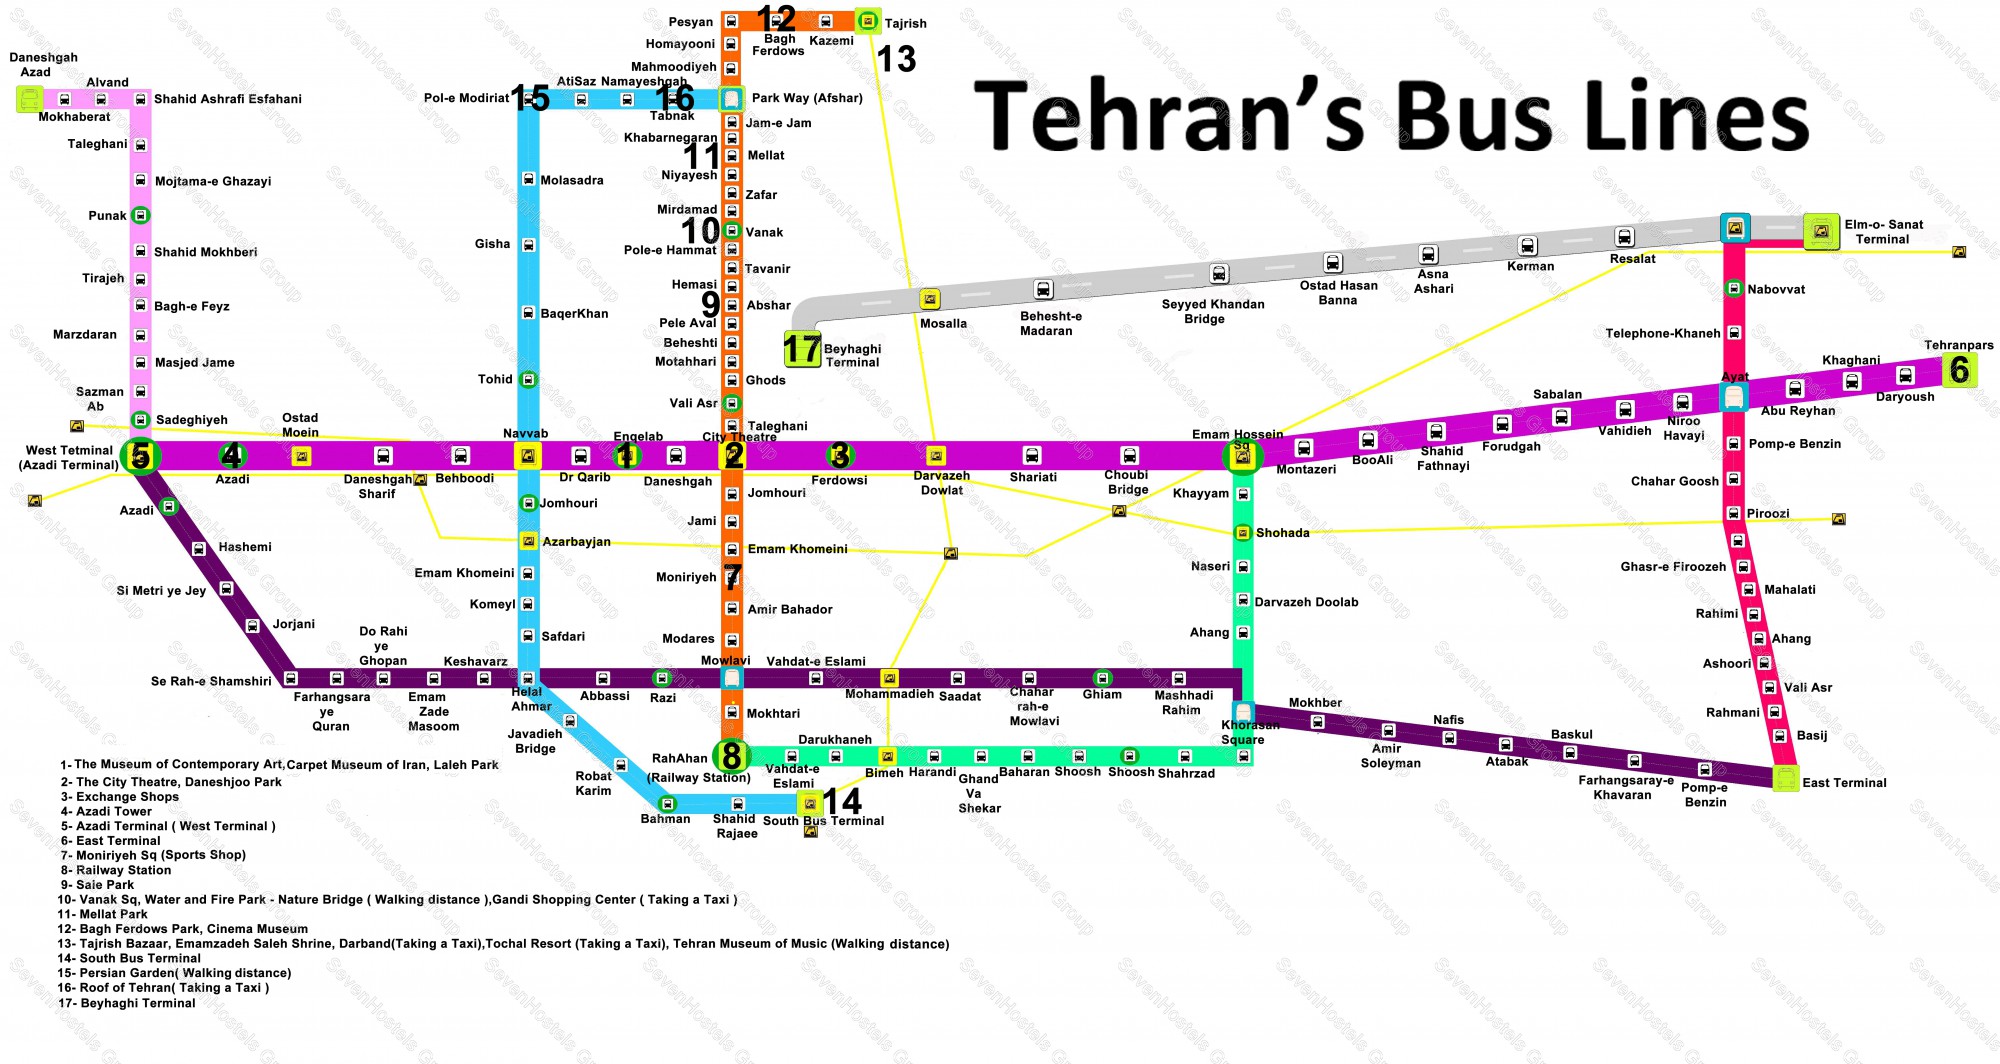 Tehran's Bus Lines